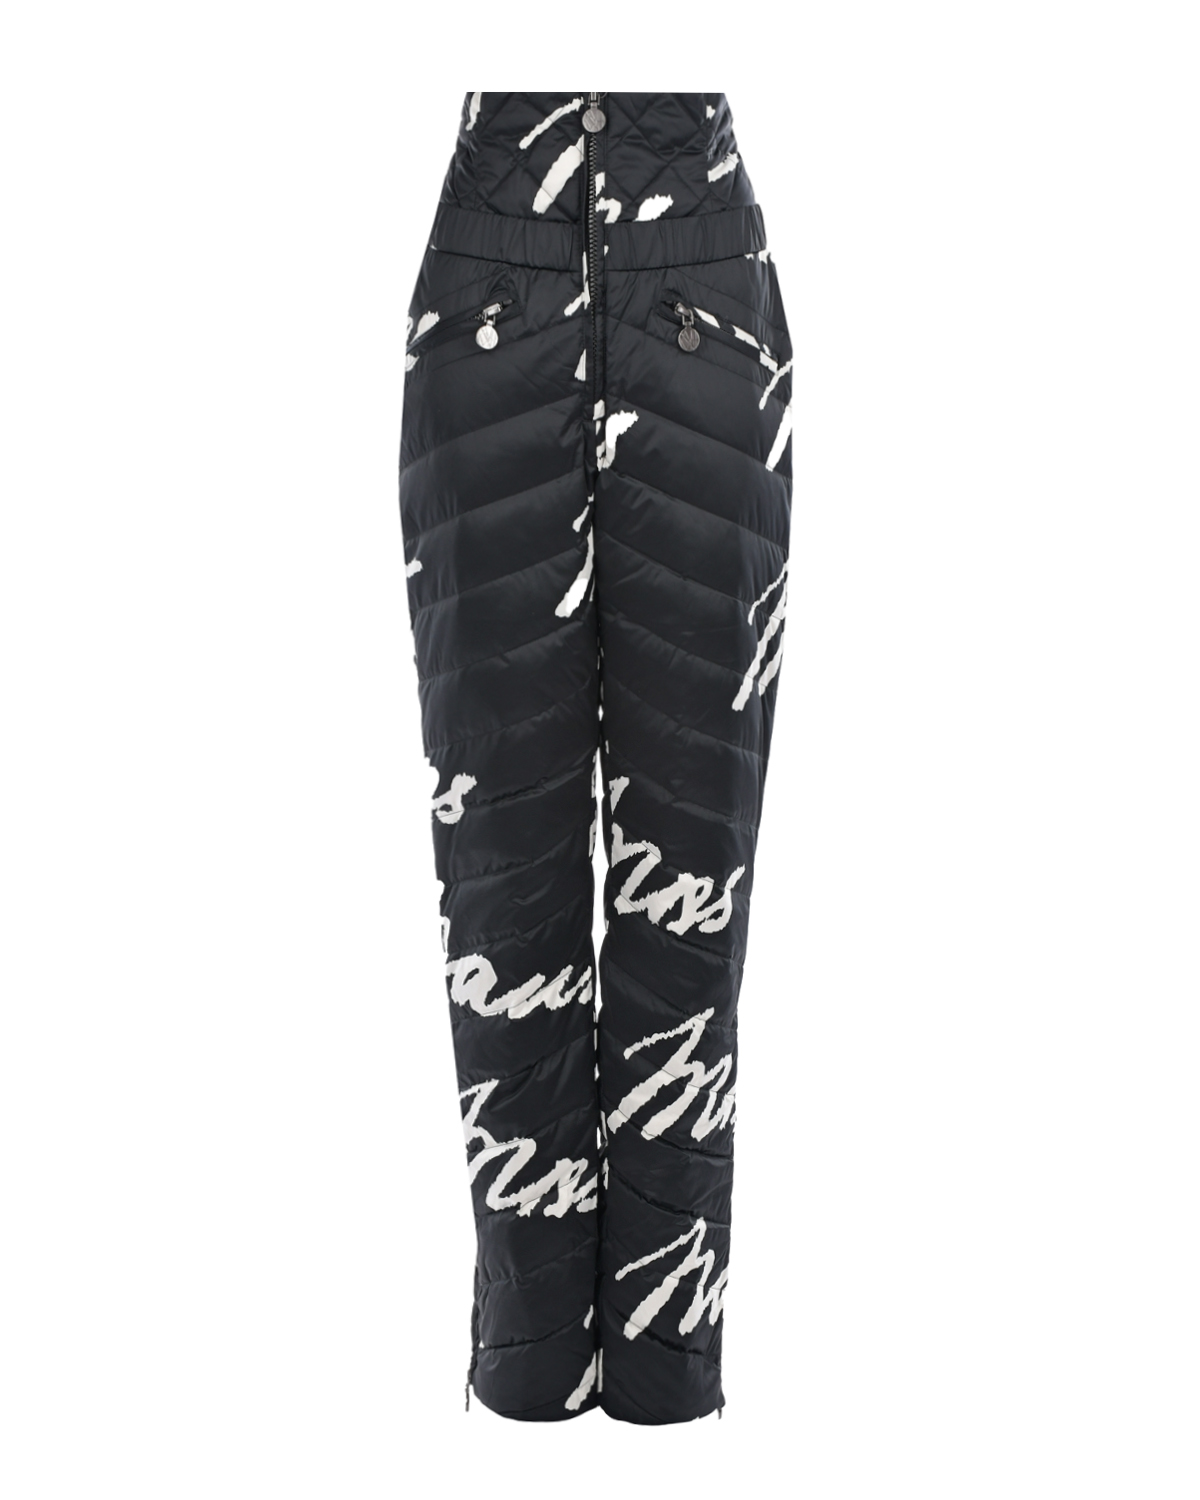 Черные стеганые брюки с белым лого Naumi, размер 40, цвет черный